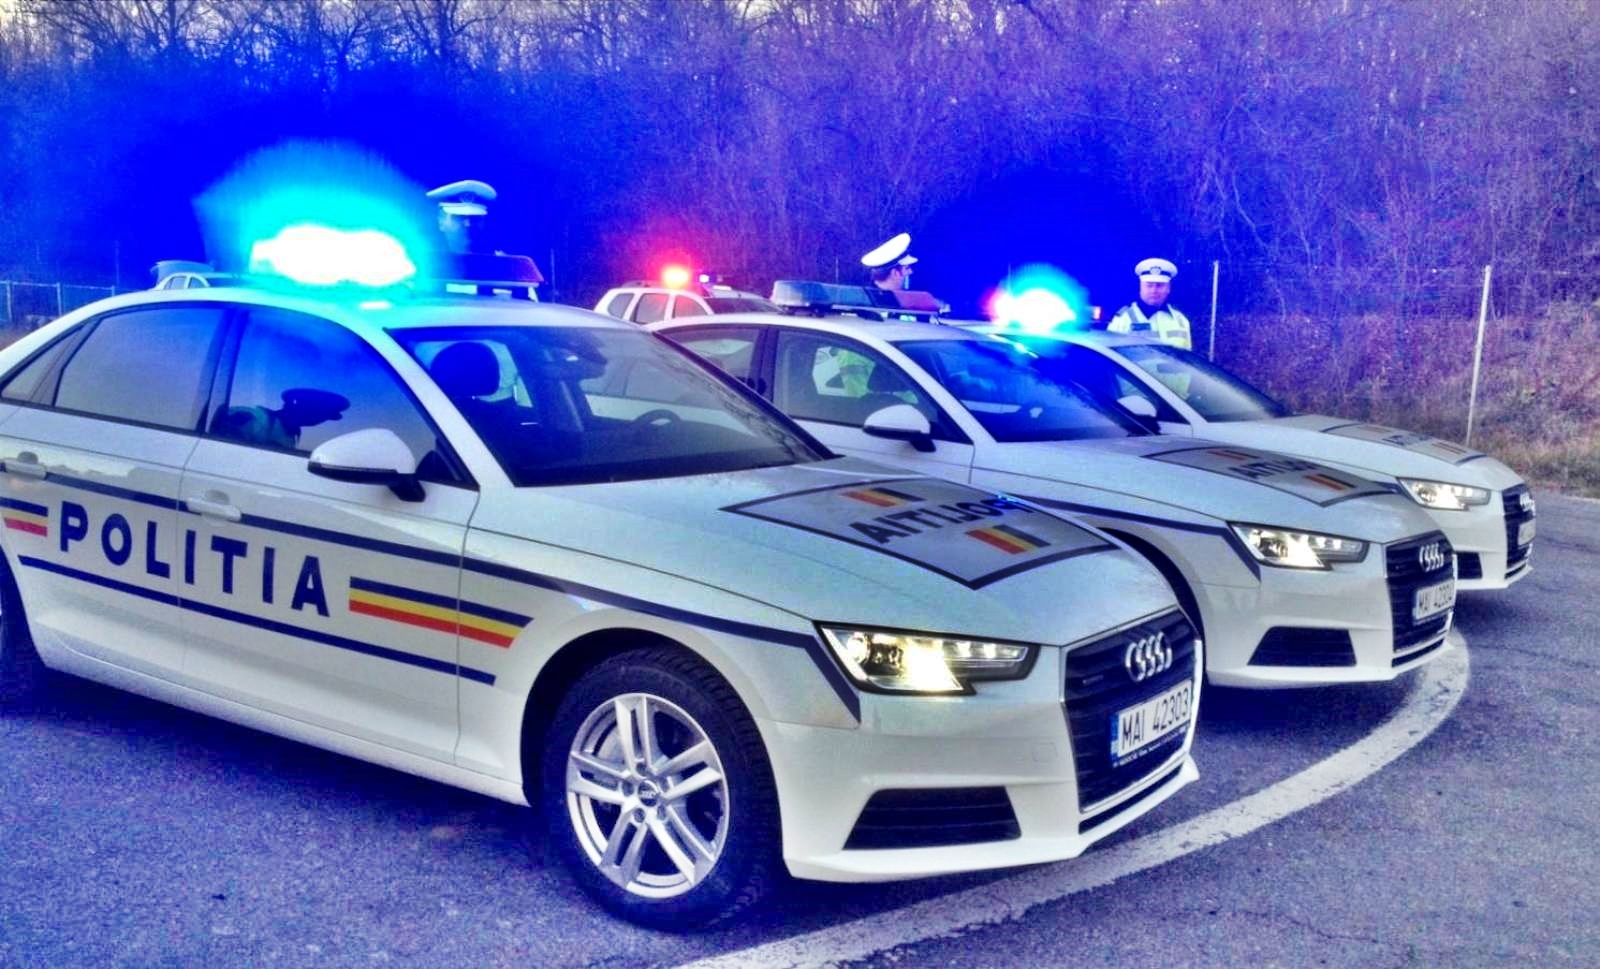 Die rumänische Polizei warnt rumänische Autofahrer vor Geschwindigkeitsüberschreitungen auf öffentlichen Straßen